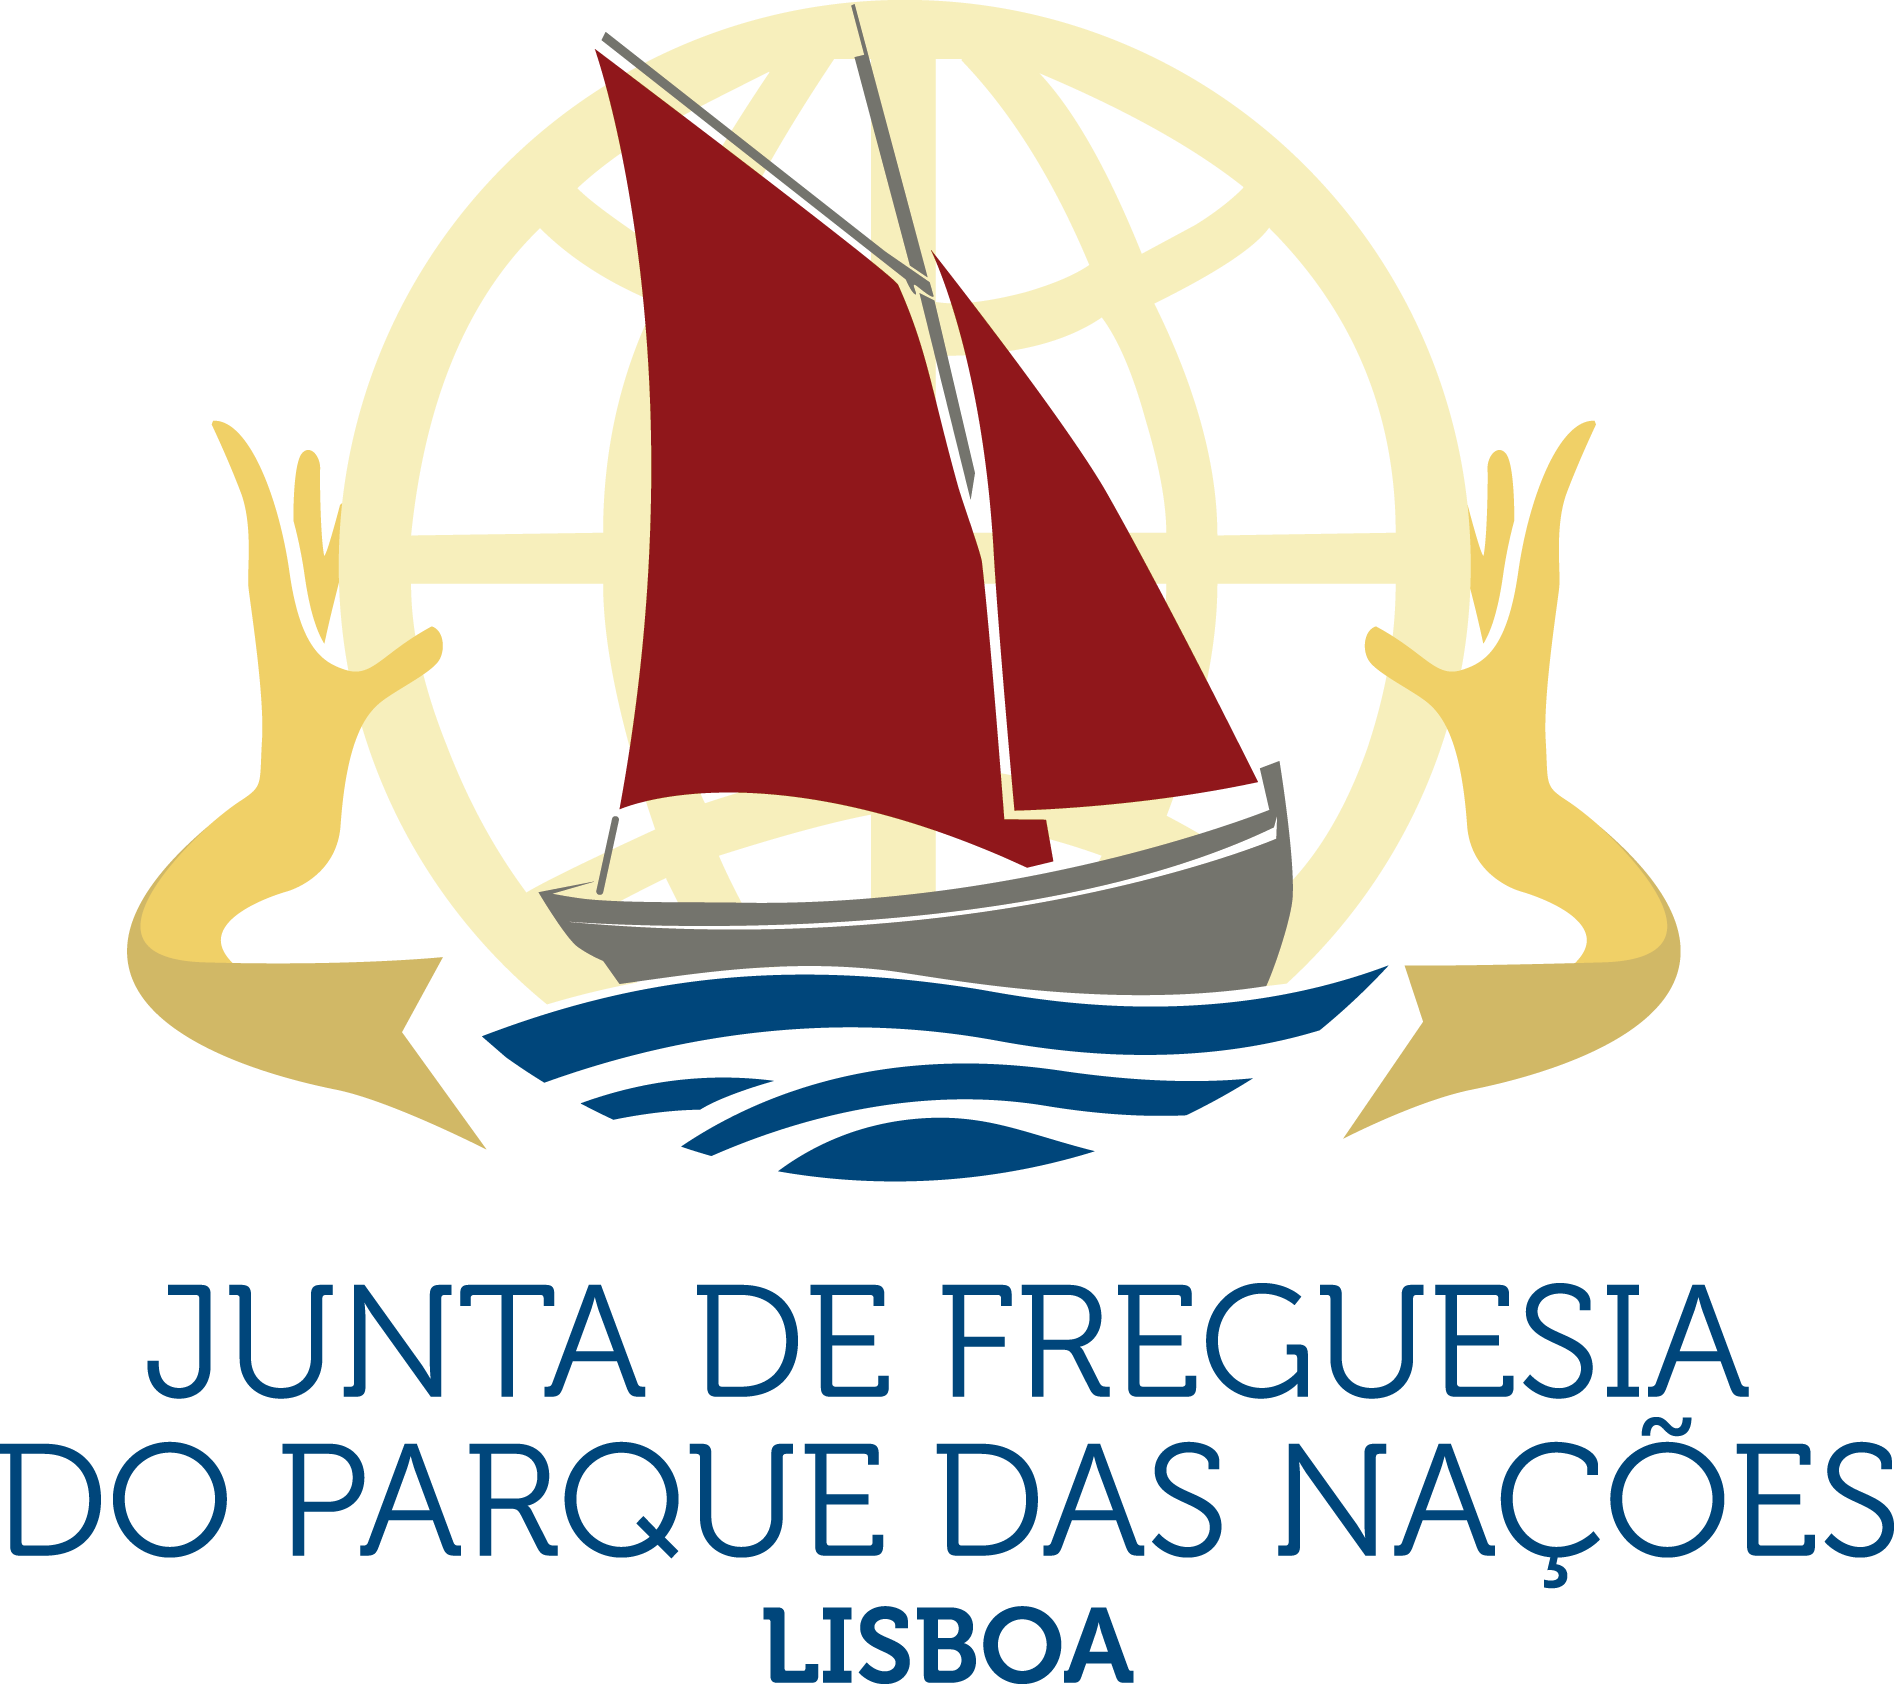 Parish Council Of Parque Das Nações - Sail (1894x1684)